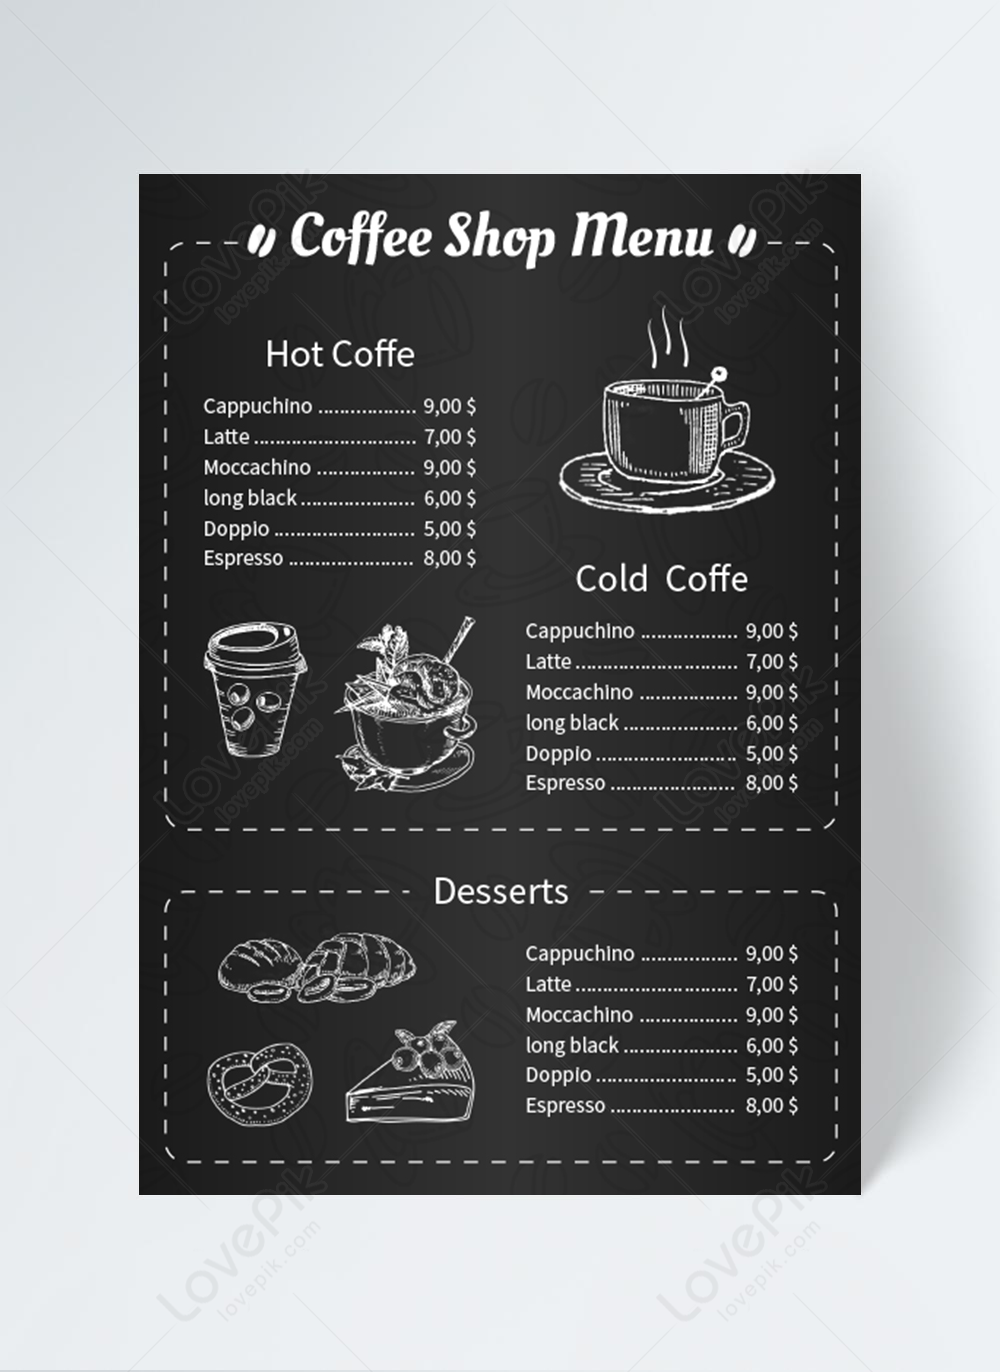 Thiết kế danh sách cà phê giúp bạn thể hiện phong cách và độc đáo của quán. Hãy xem những thiết kế danh sách cà phê đầy sáng tạo và độc đáo để tạo ra sự khác biệt cho quán của bạn.